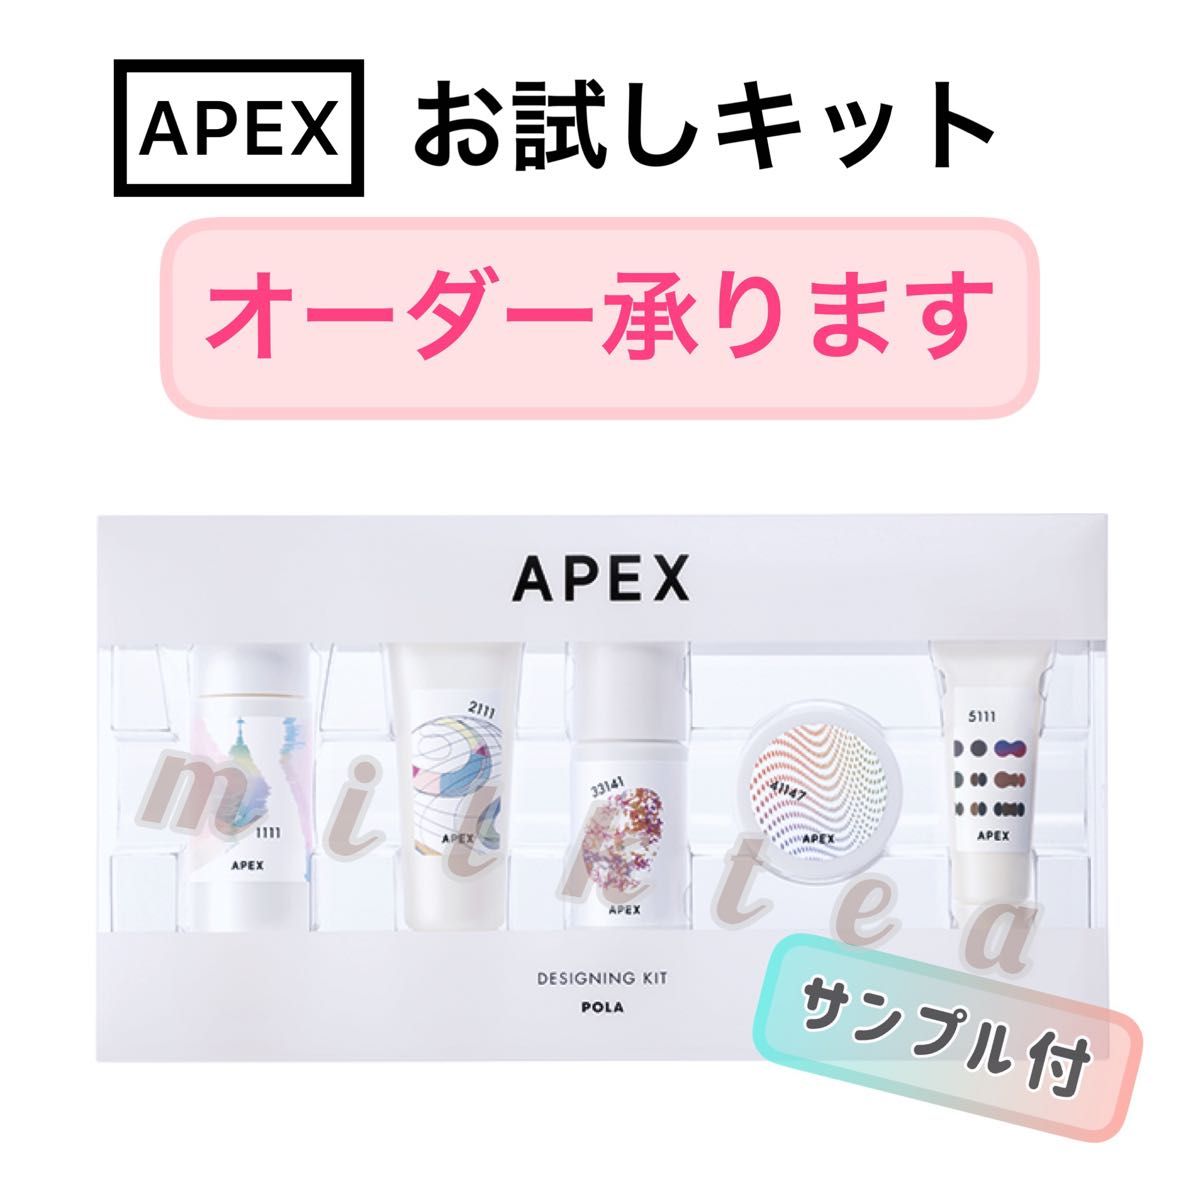 オーダーOK】APEX お試し5点セット クレンジング 洗顔 化粧水 乳液